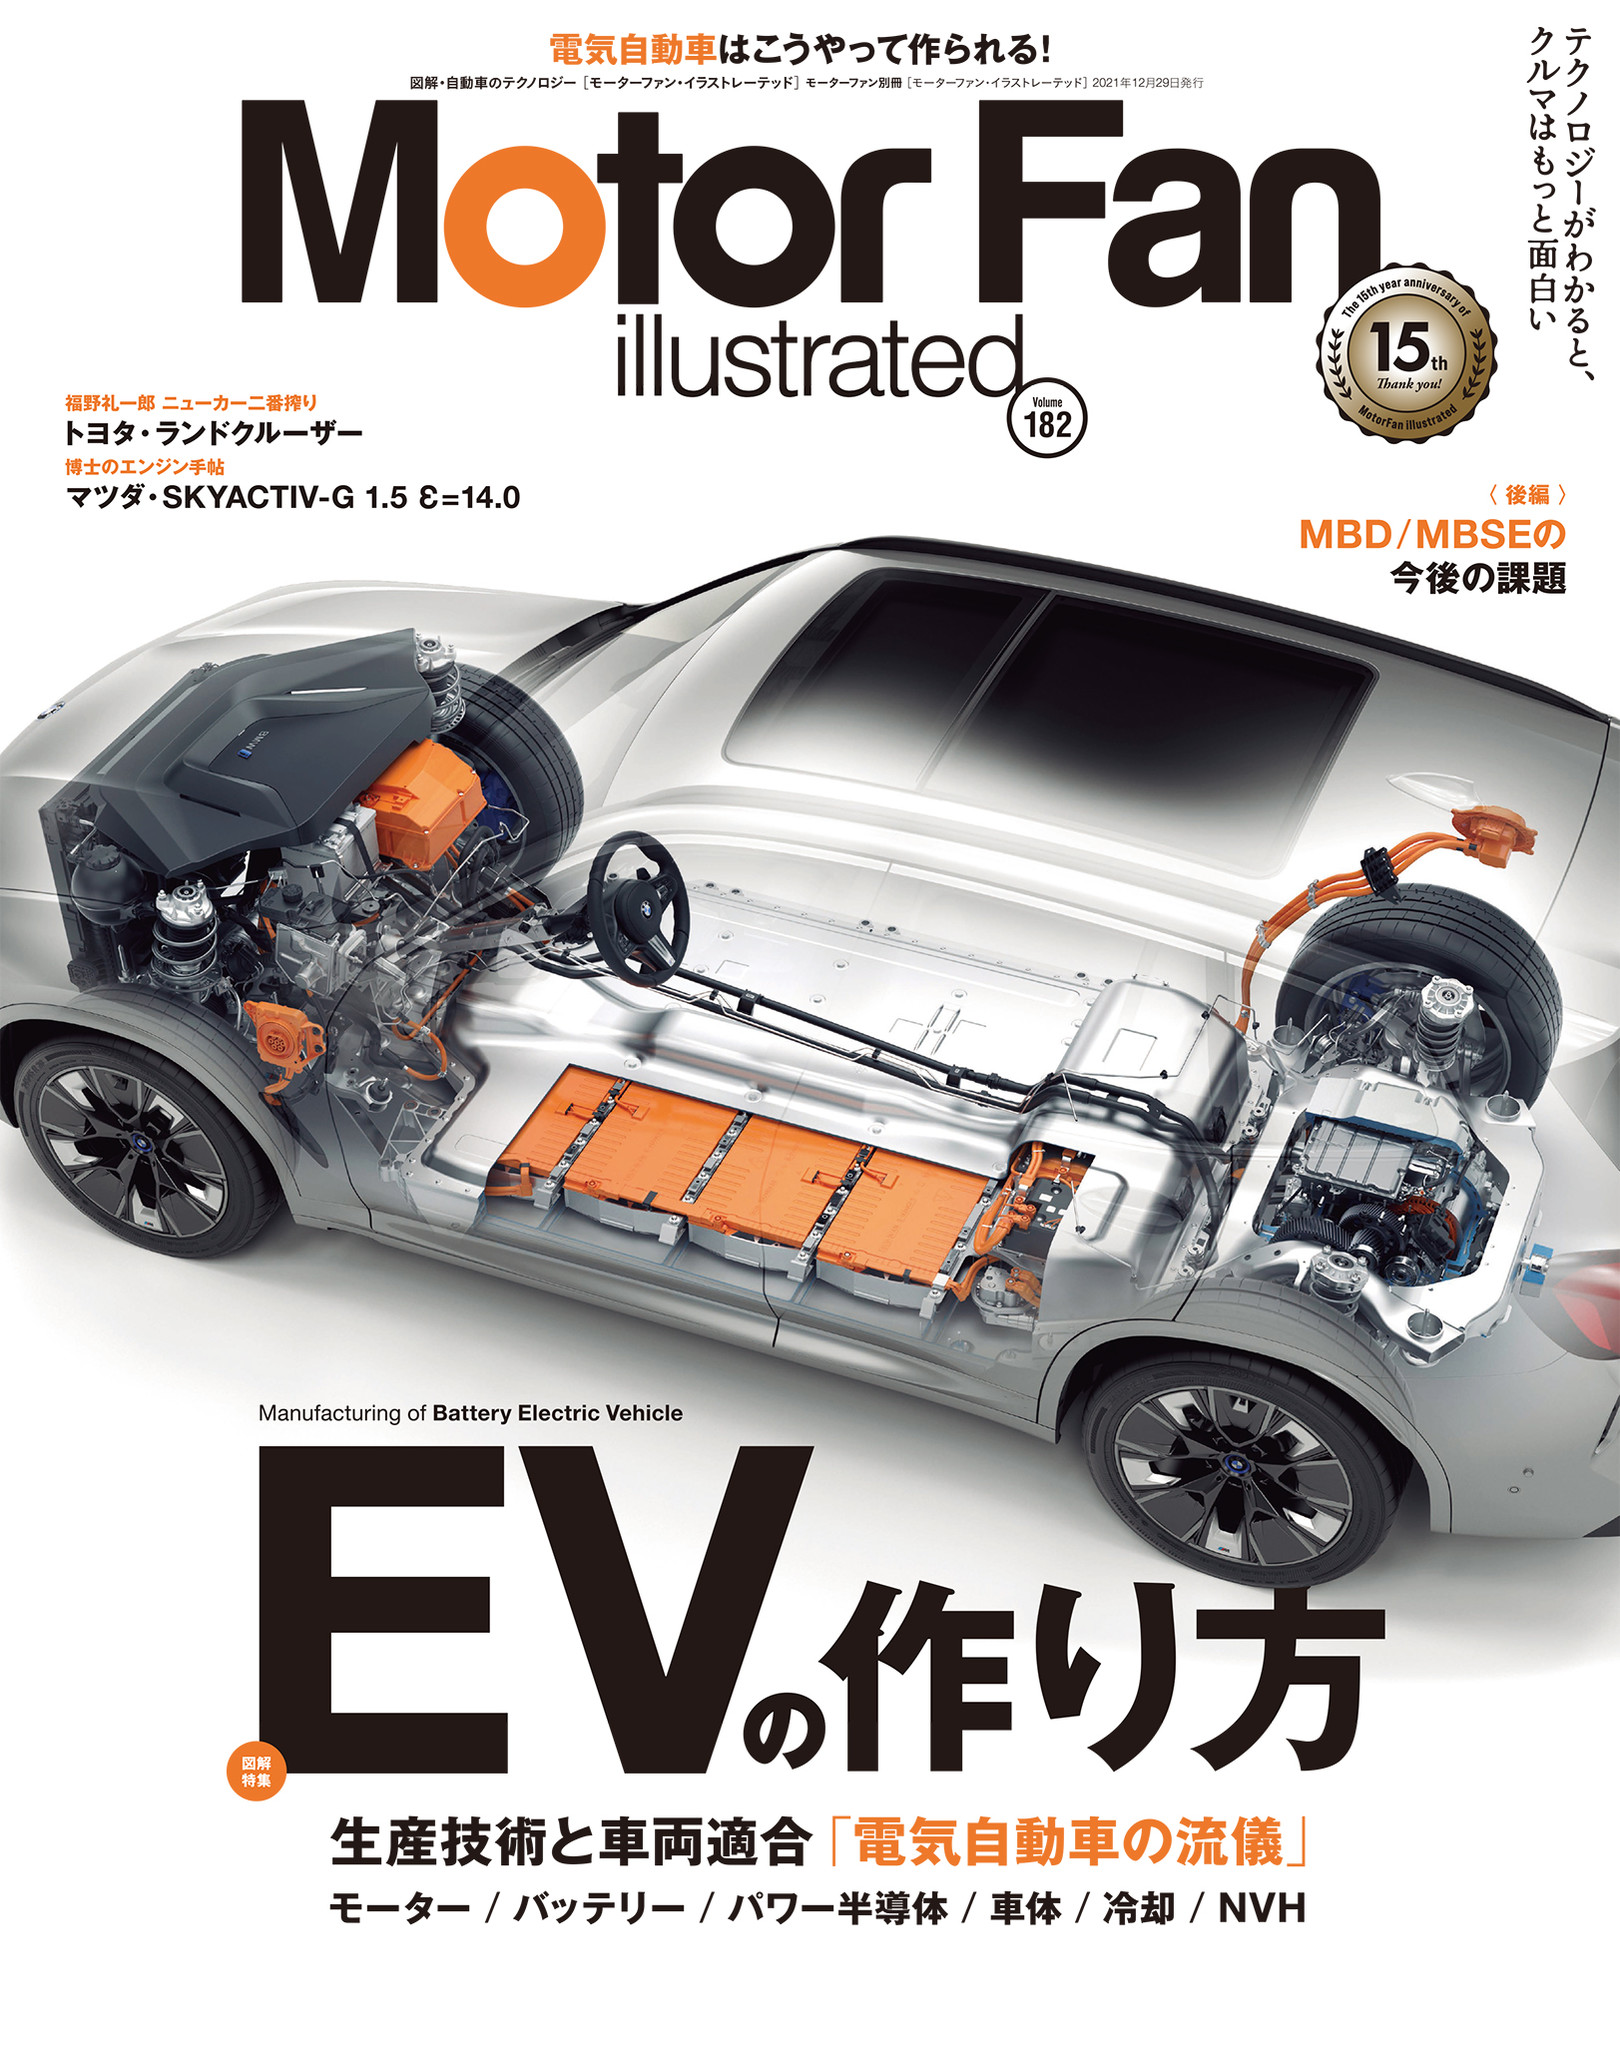 モーターファン イラストレーテッド Mfi Vol 1は Evの作り方 特集 三栄のプレスリリース